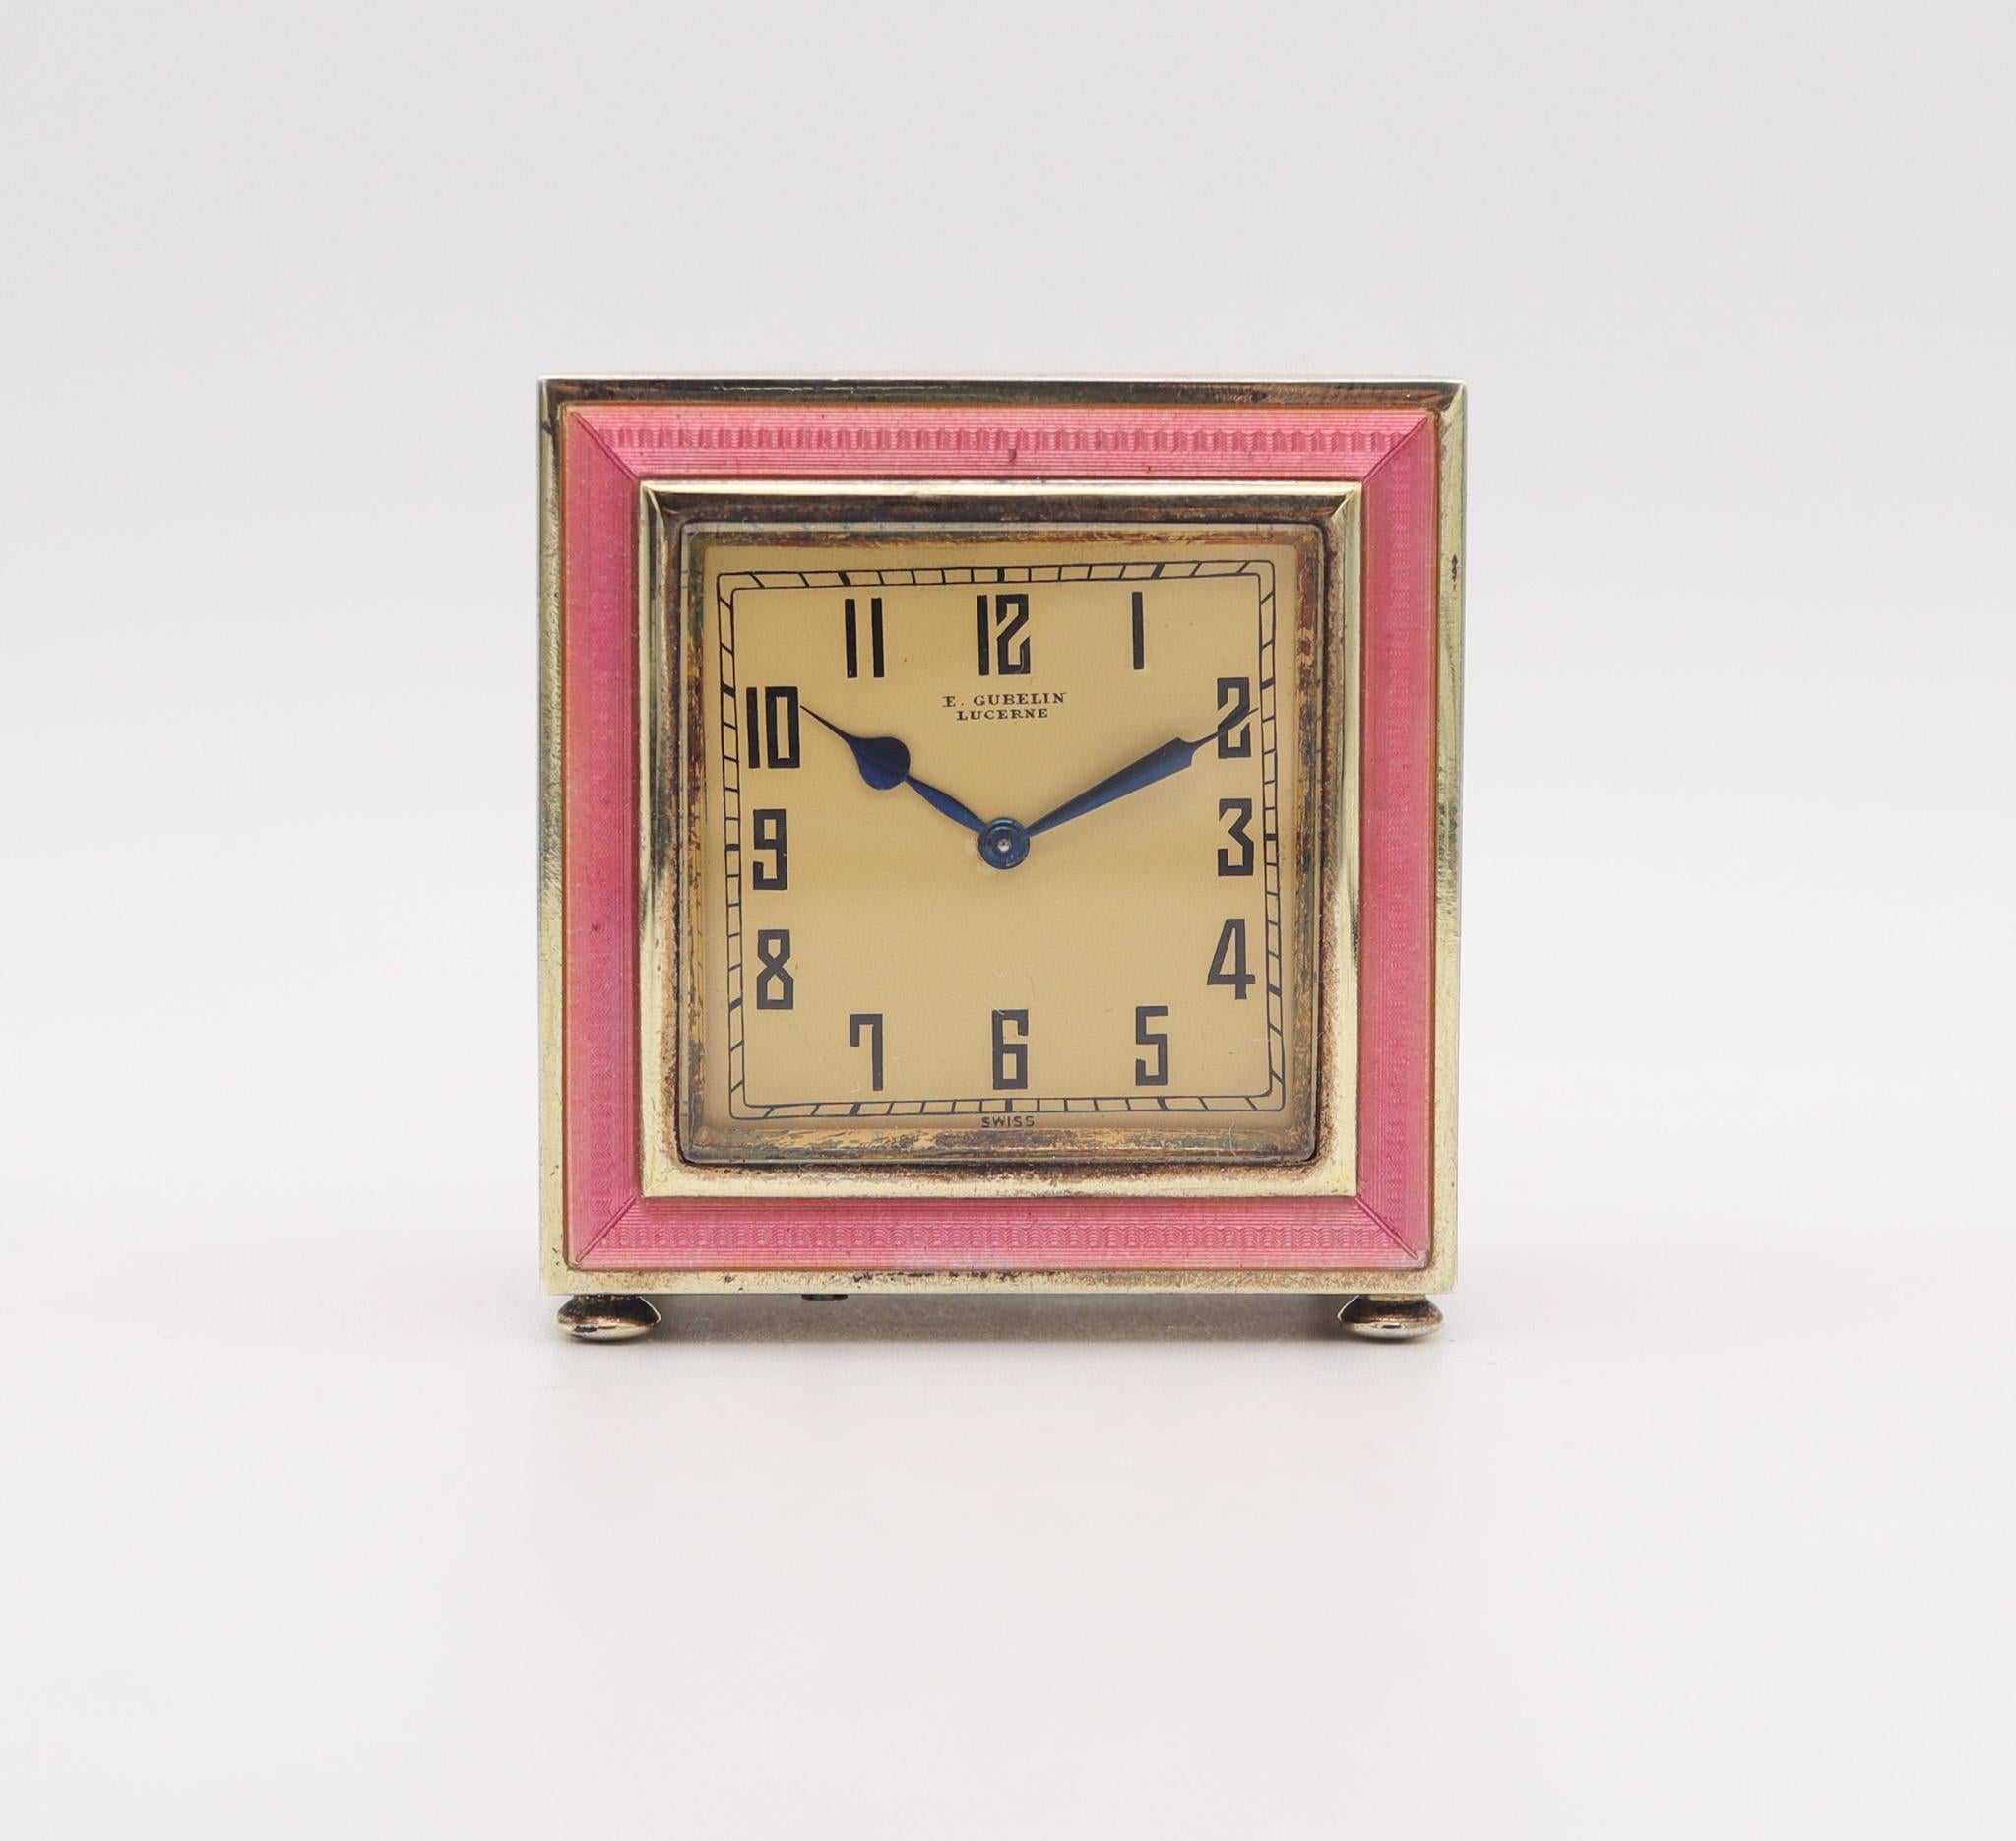 Miniatur-Boudoir-Tischuhr im Art déco-Stil von Gübelin.

Fabelhafte Miniatur-Schreibtischuhr, hergestellt in Luzern Schweiz von der E Gübelin & Co. während der Art Déco Periode, zurück im Jahr 1925. Die Handwerkskunst dieser Boudoir-Uhr ist